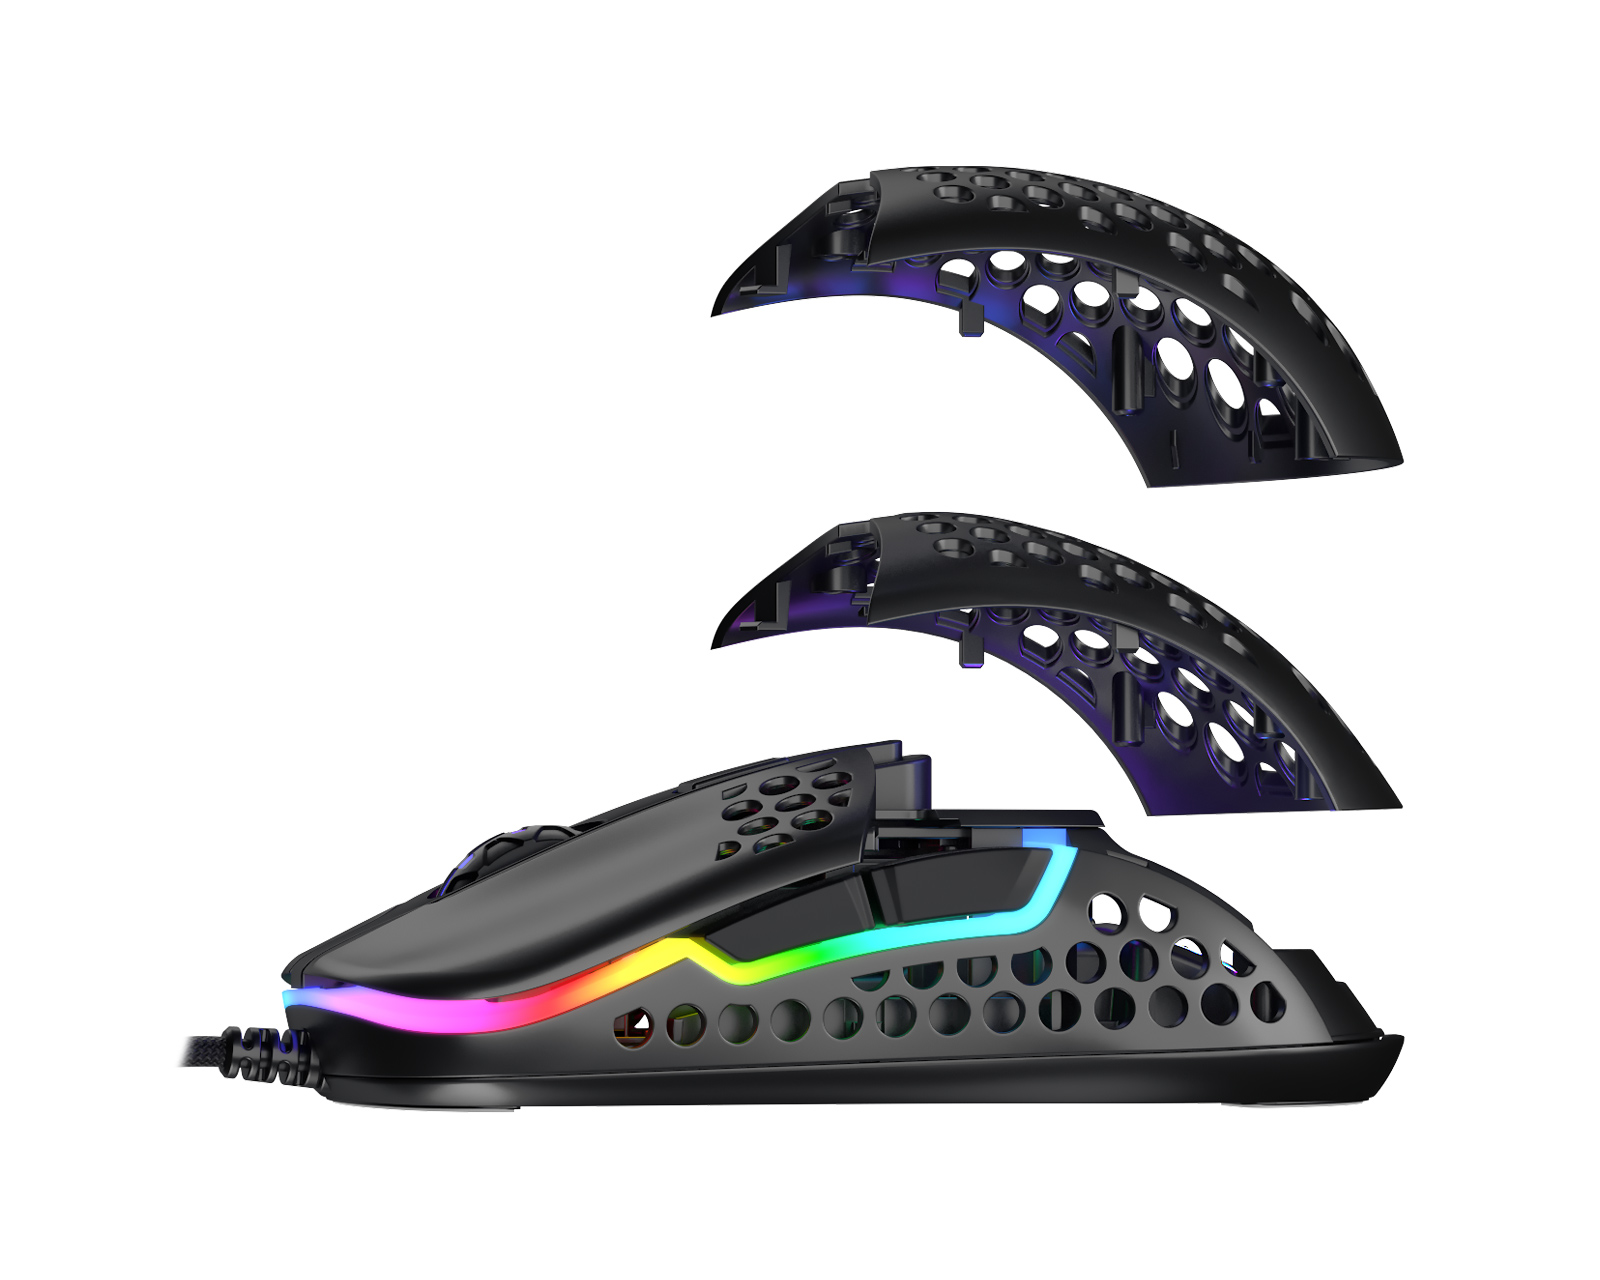 Xtrfy M42 RGB Gaming Mouse Black - us.MaxGaming.com